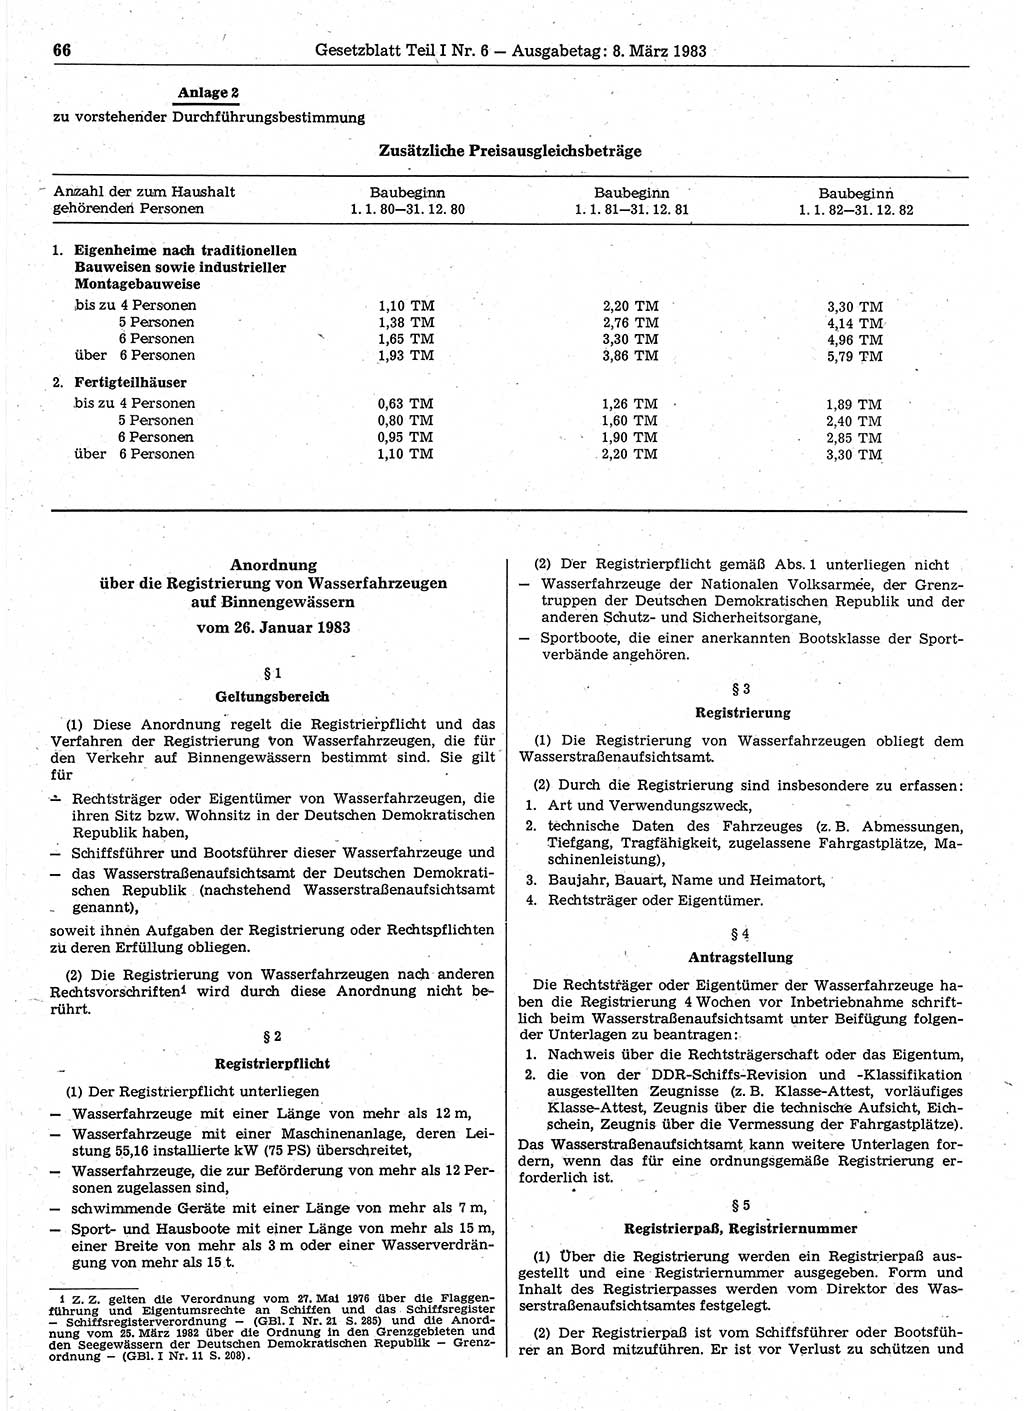 Gesetzblatt (GBl.) der Deutschen Demokratischen Republik (DDR) Teil Ⅰ 1983, Seite 66 (GBl. DDR Ⅰ 1983, S. 66)